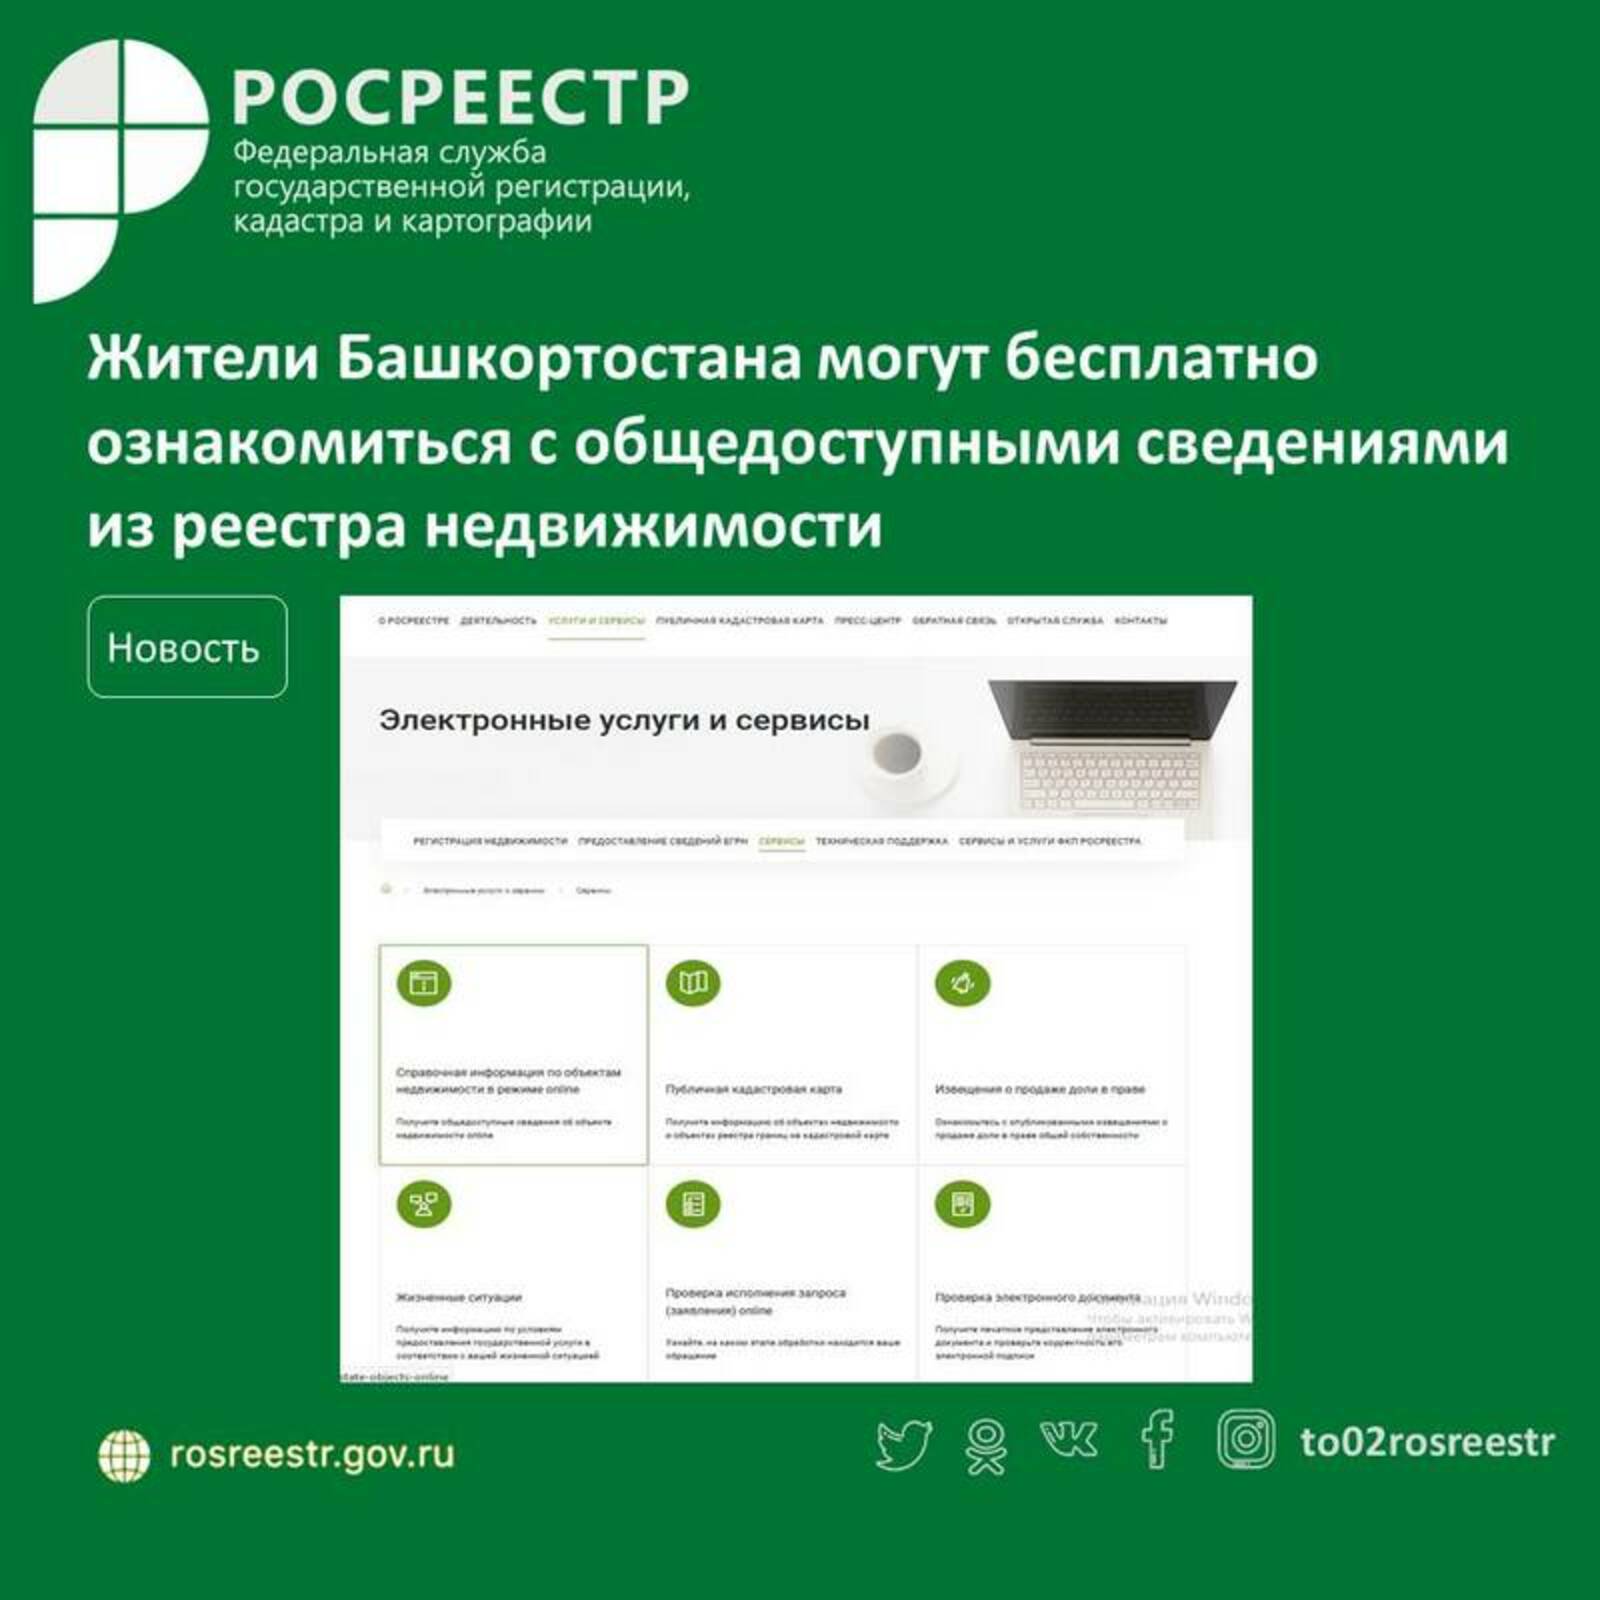 Жители Башкортостана могут бесплатно ознакомиться с общедоступными сведениями из реестра недвижимости